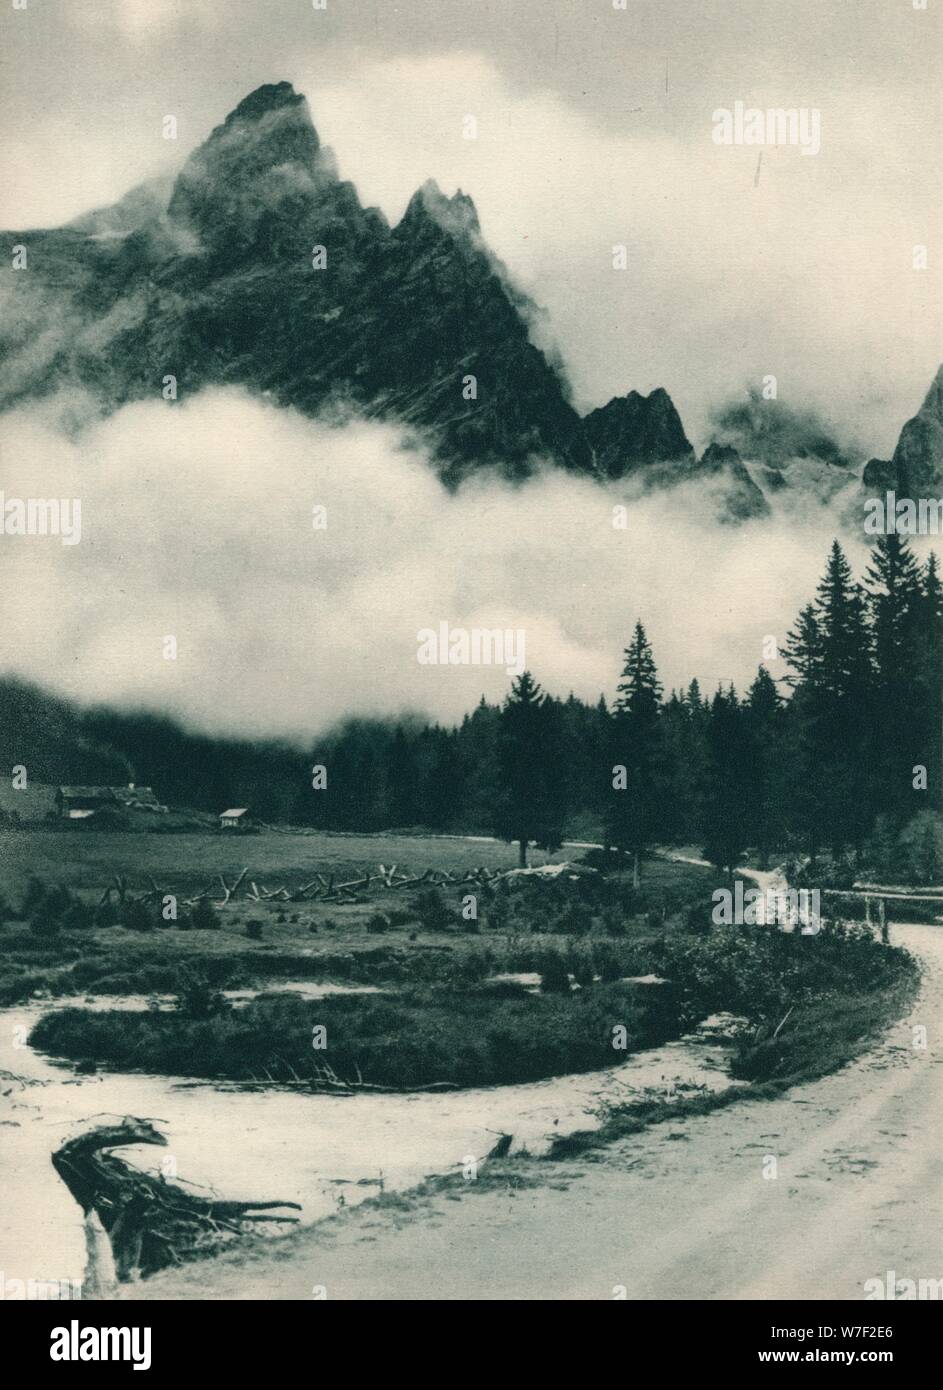 Gruppo della pala in nuvole, San Martino di Castrozza, Dolomiti, Italia, 1927. Artista: Eugen Poppel. Foto Stock